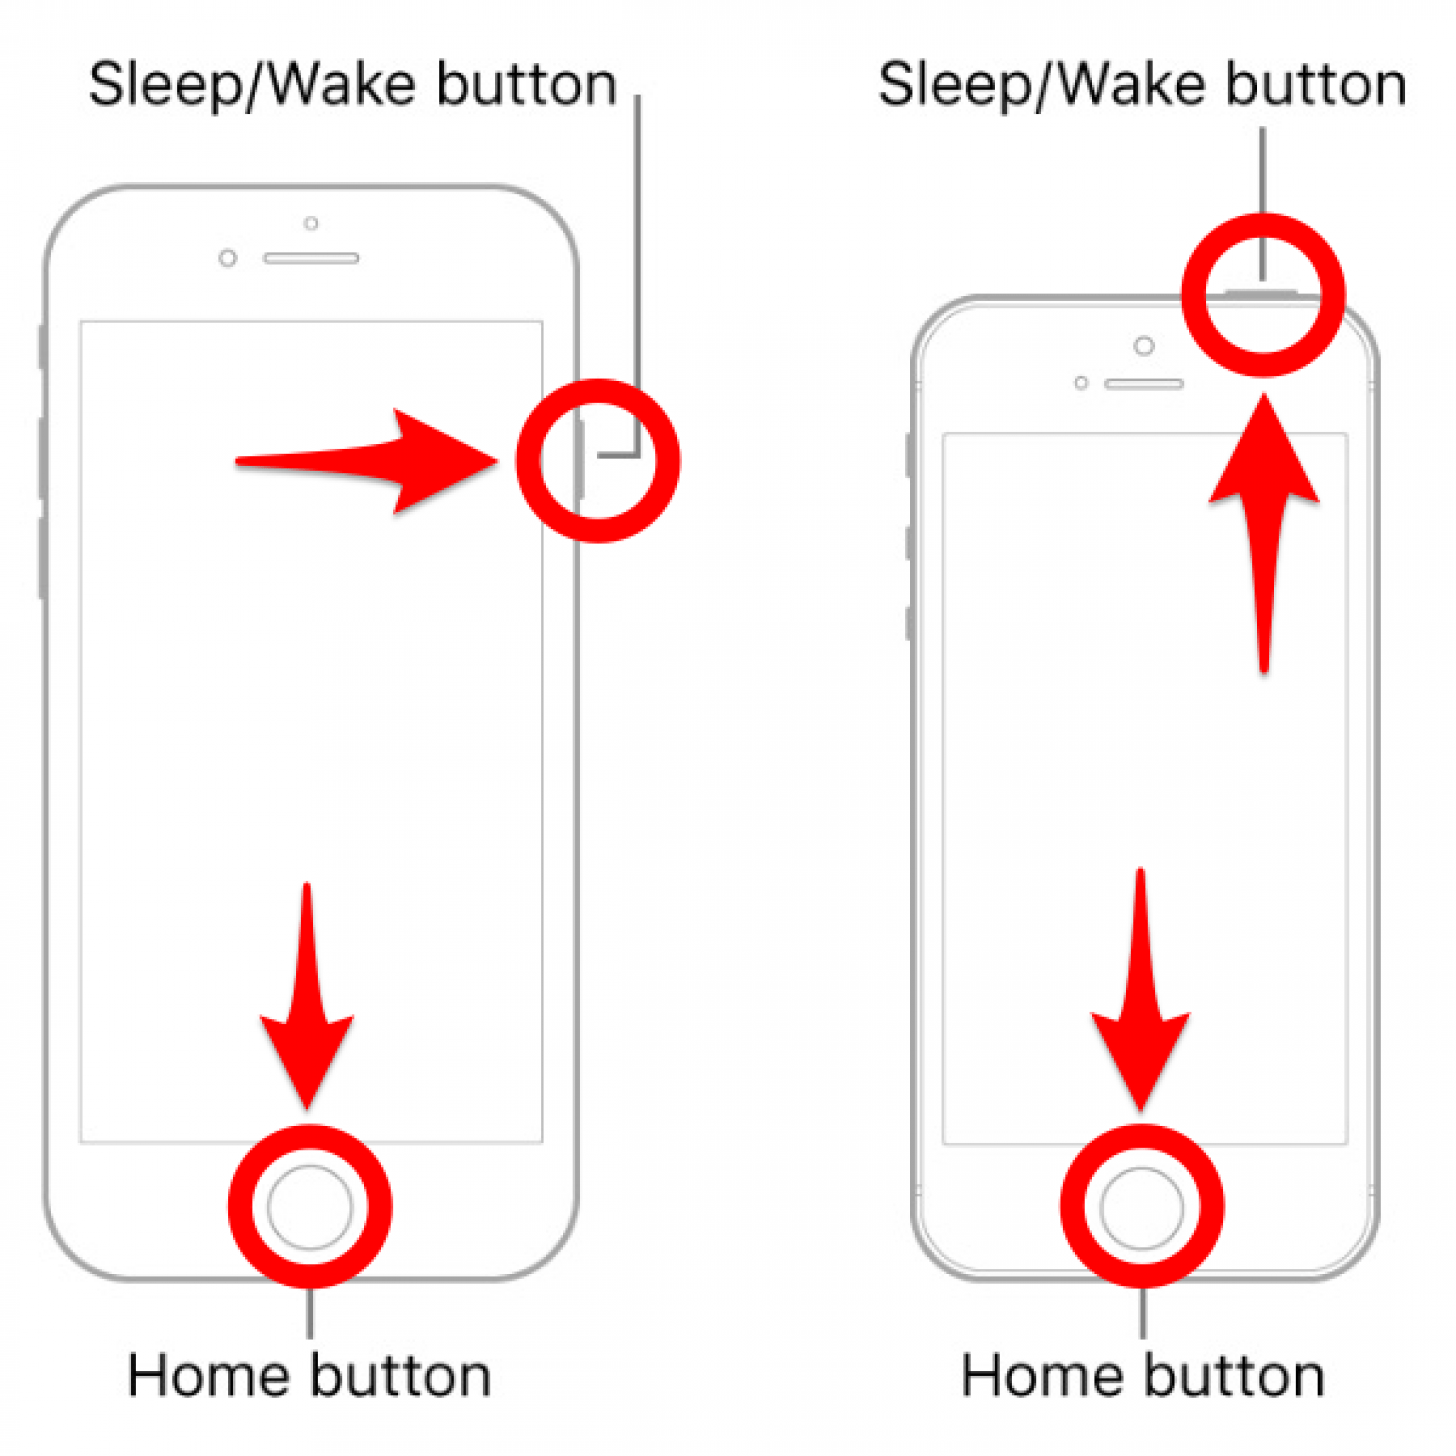 Drücken Sie gleichzeitig die Home-Taste und die Sleep/Wake-Taste – das iPhone lässt sich nicht ausschalten